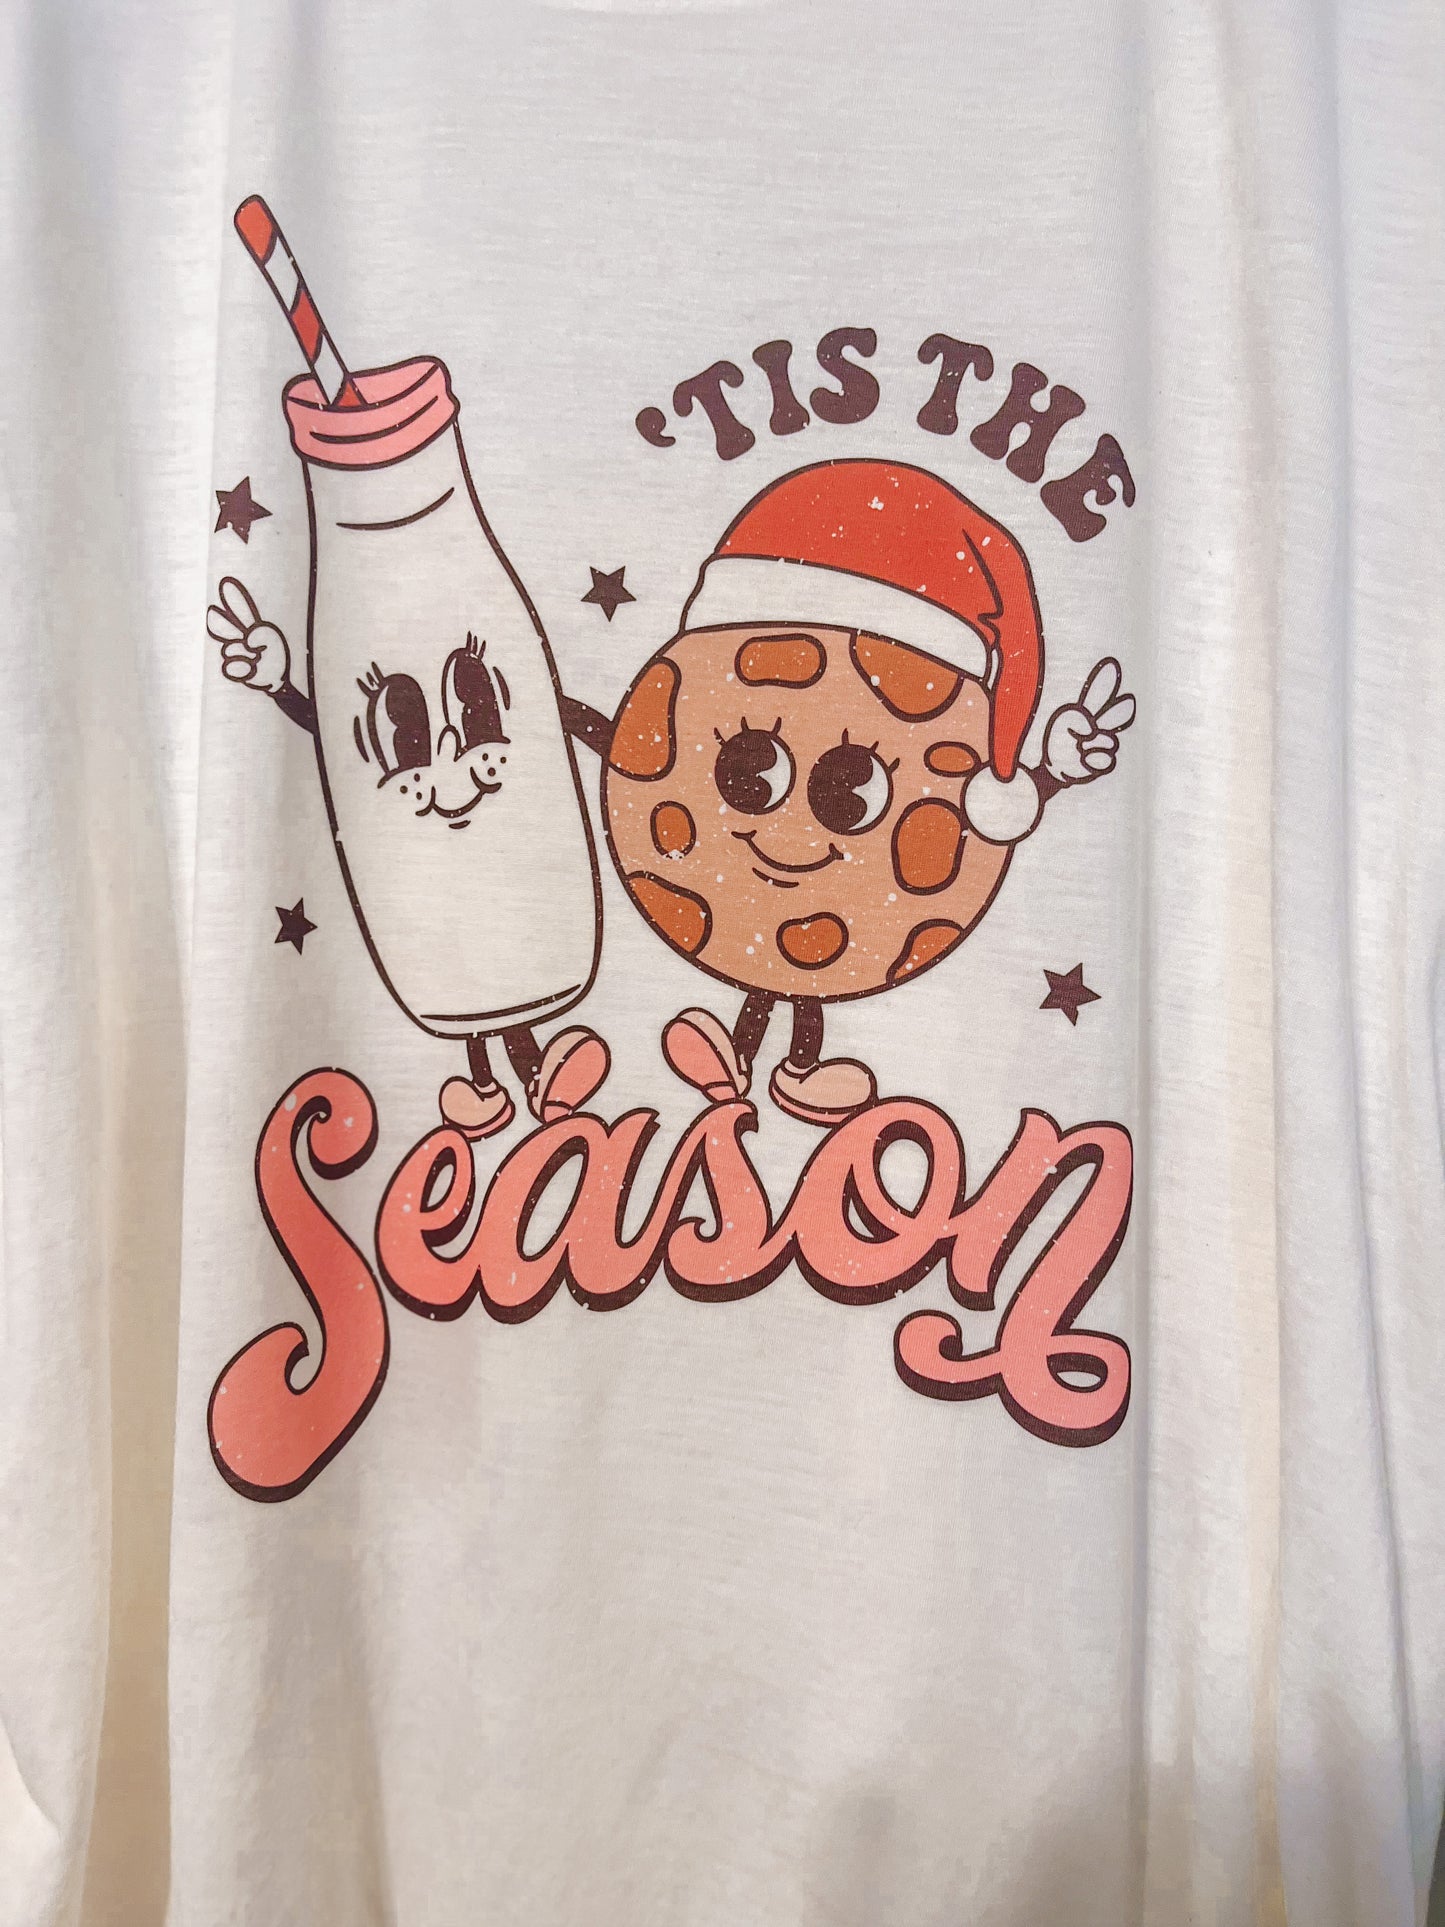 'Tis The Season Shirt